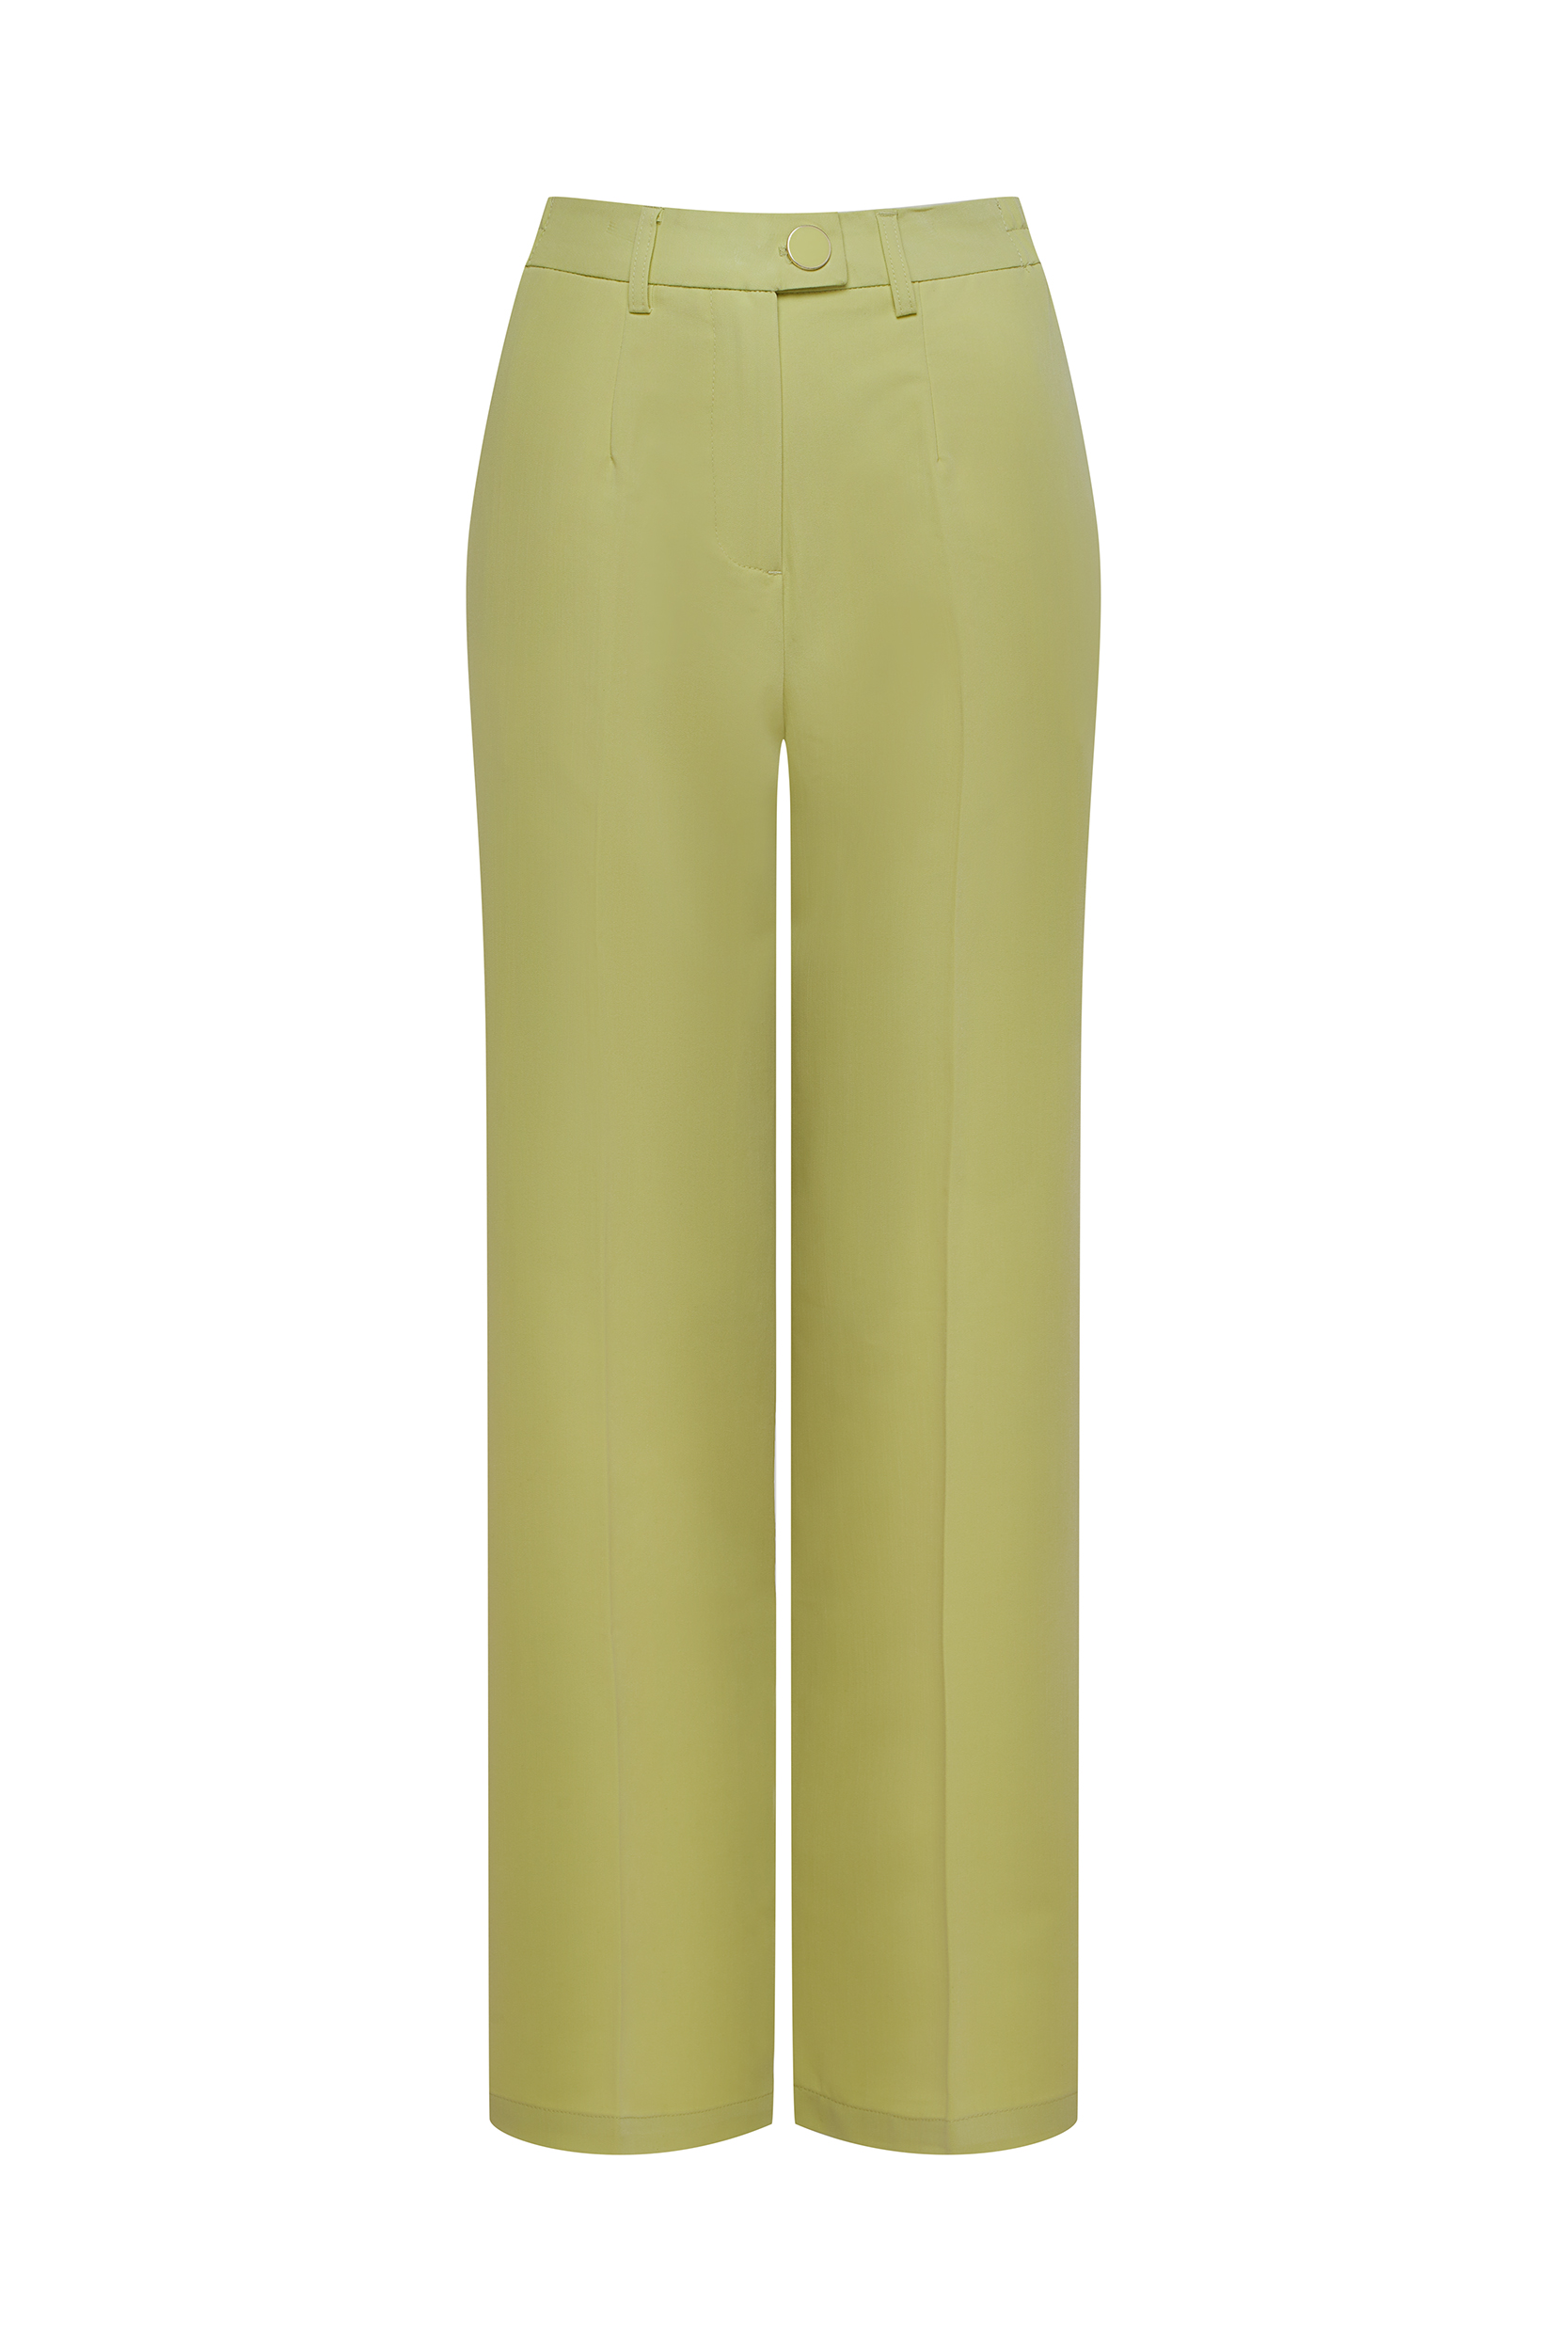 Eleganckie spodnie w kolorze limonki